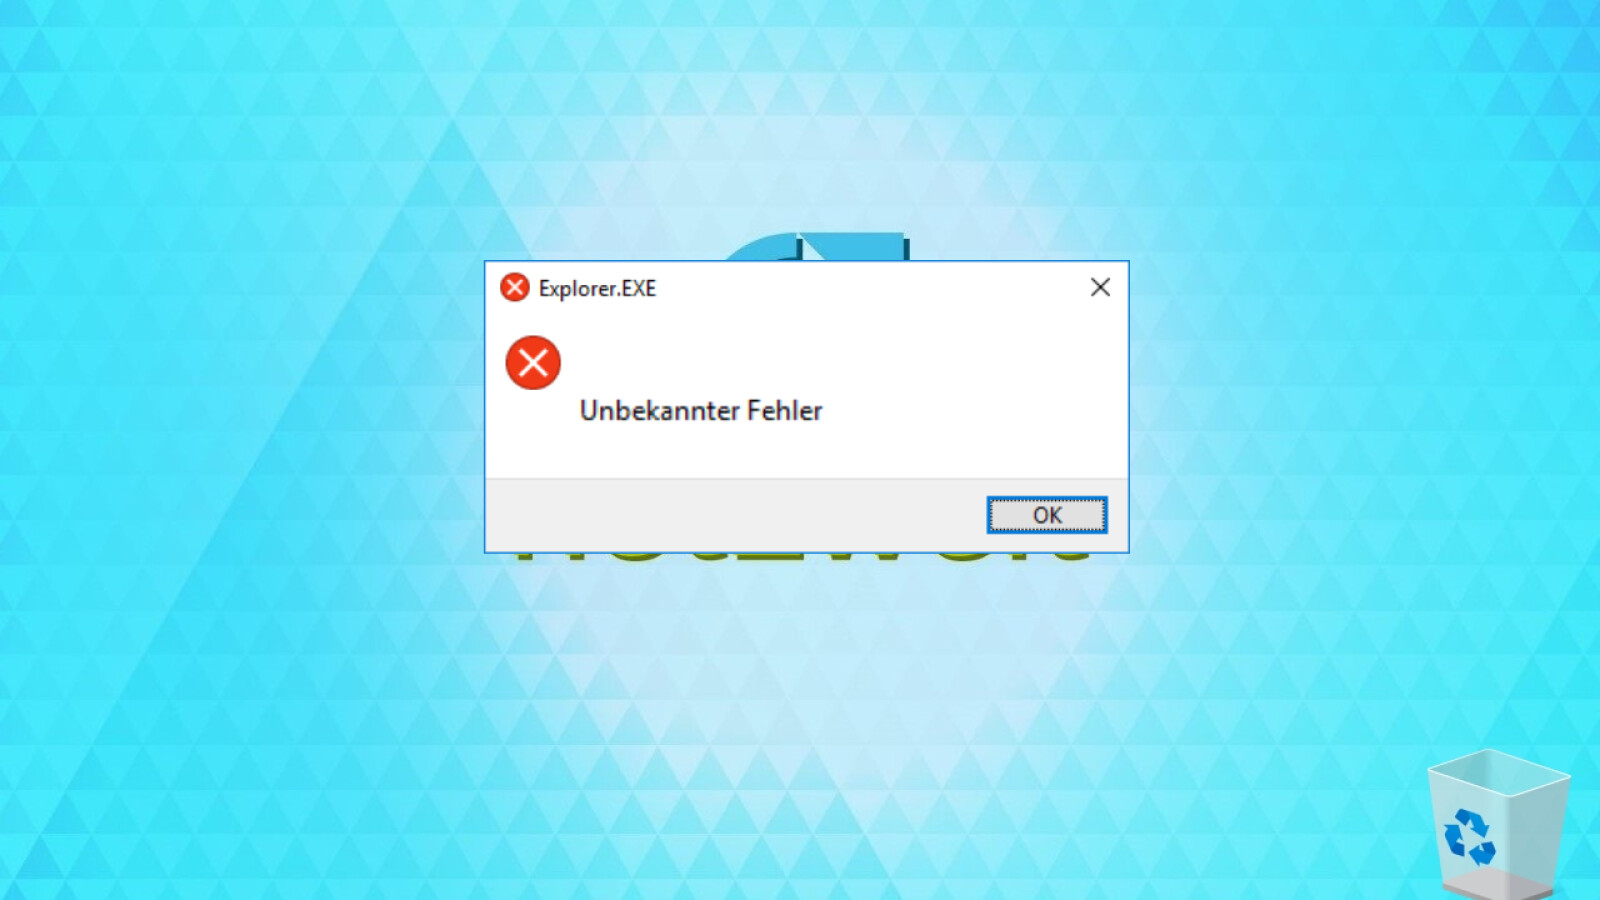 download explorer exe windows 10